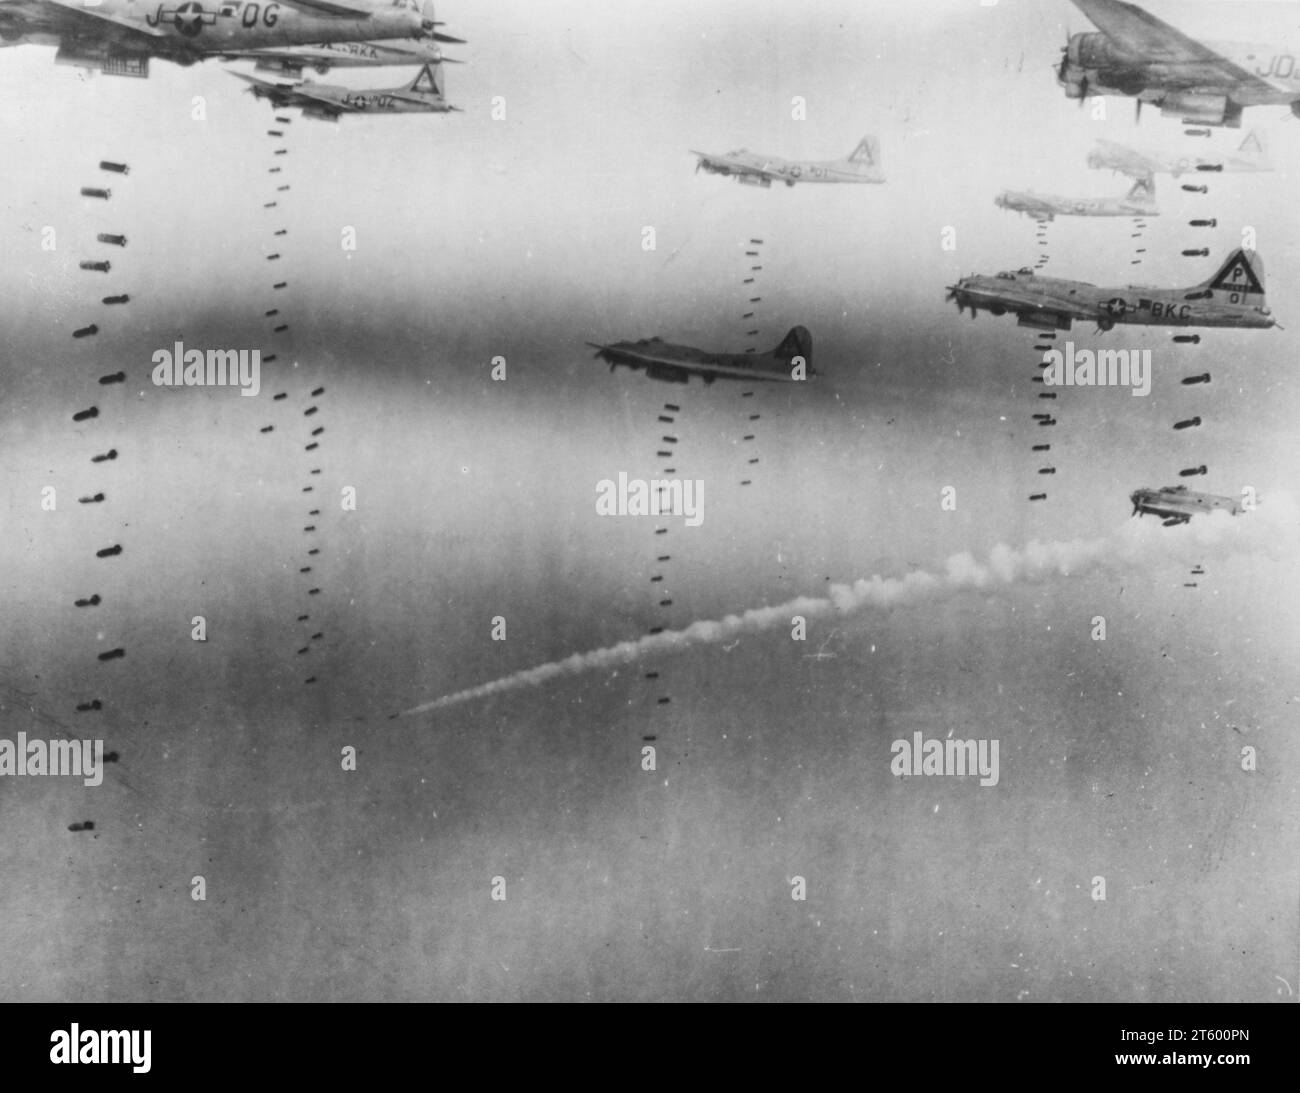 Bomben Regen auf der deutschen Fluchtroute -- konzentrierte sich auf die Explosion von drei Eisenbahnzentren im Gebiet von Dresden, Drosselpunkte für Deutsche, die südöstlich in die Berge fahren, Boeing B-17 Flying Forresses of US 8Th AF am 17. April 1945 sprengte das Ziel Stockfoto